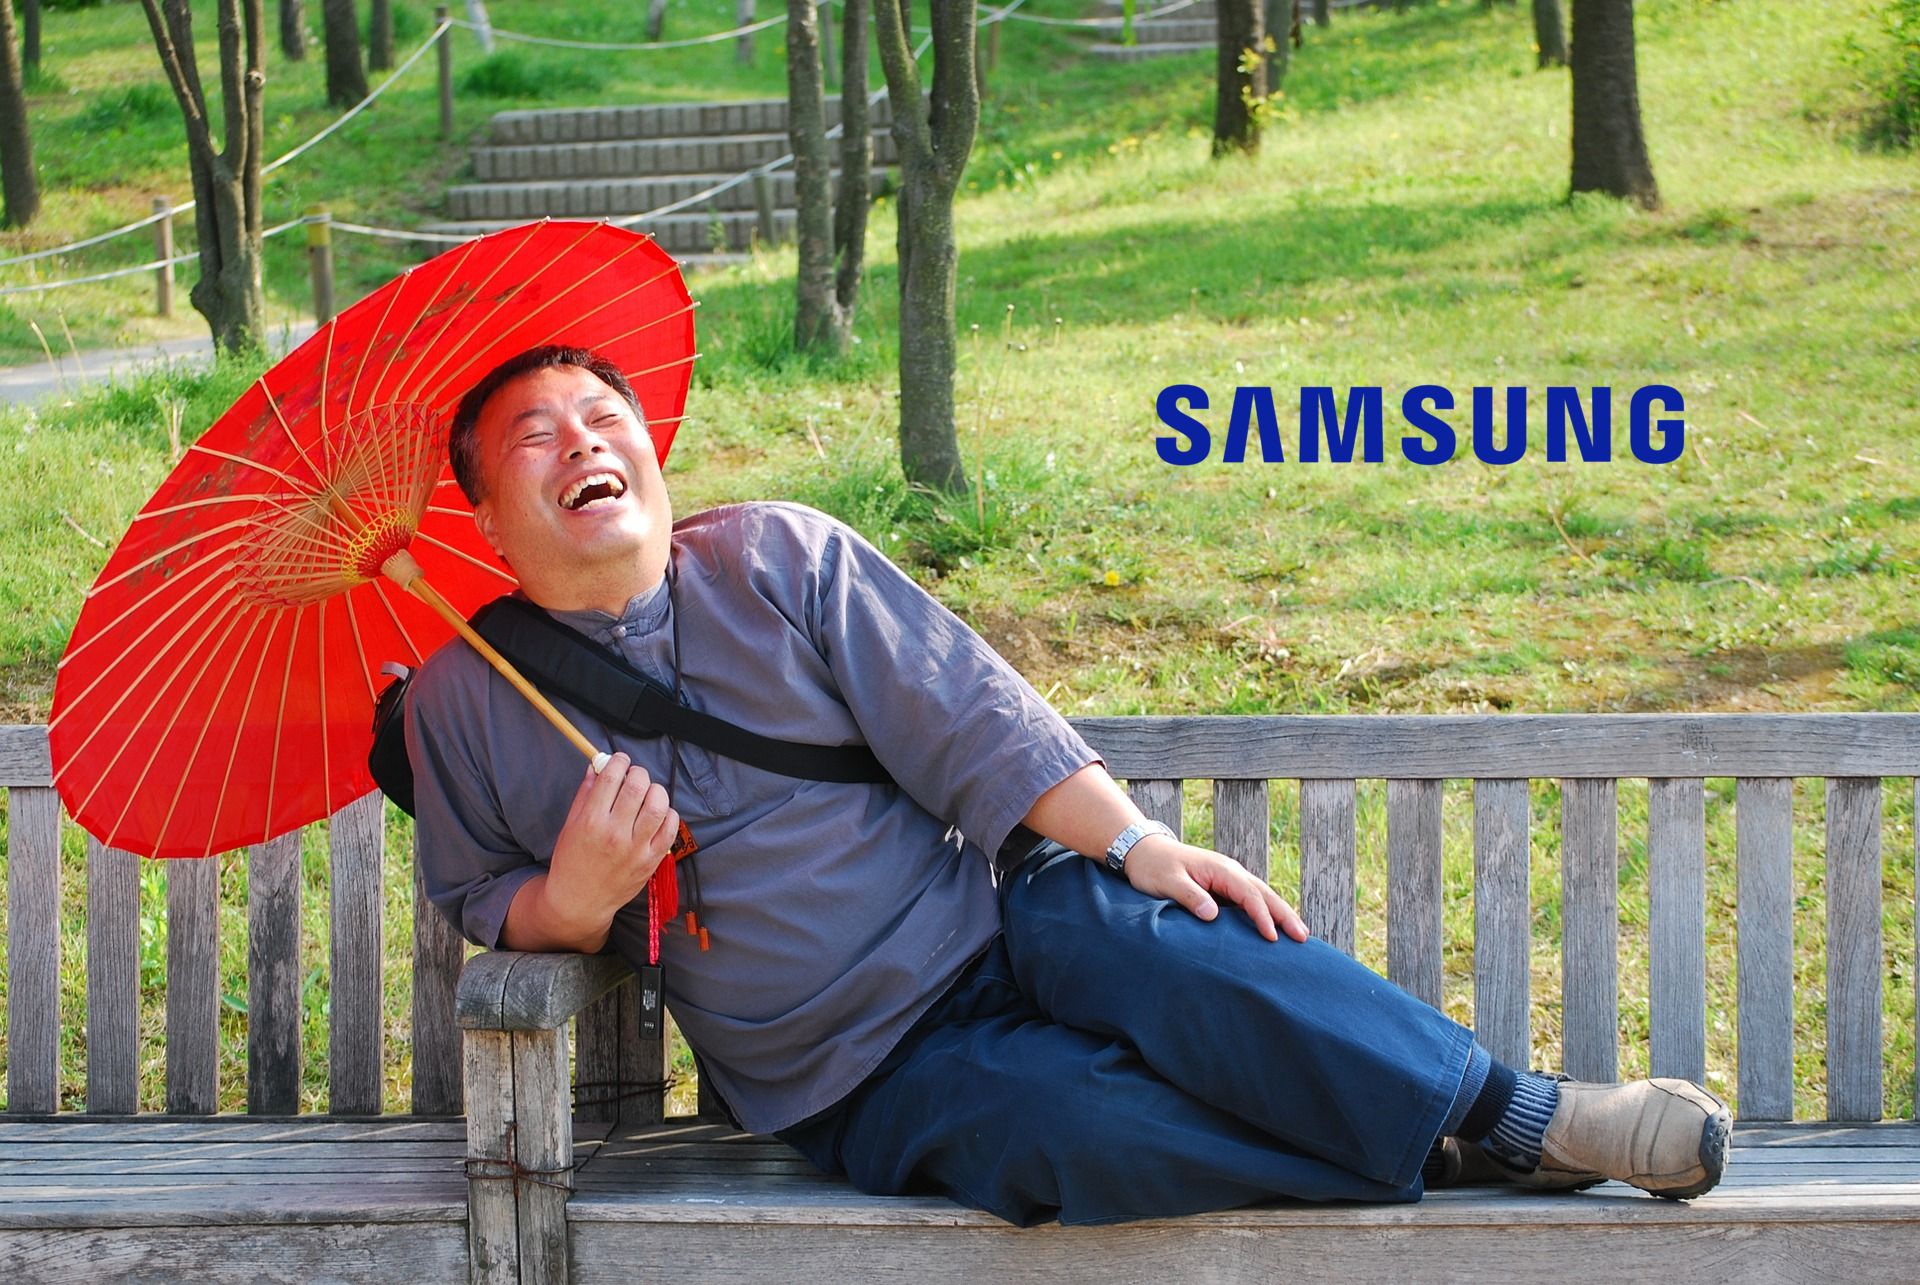 laughing śmiech mężczyzna Samsung logo